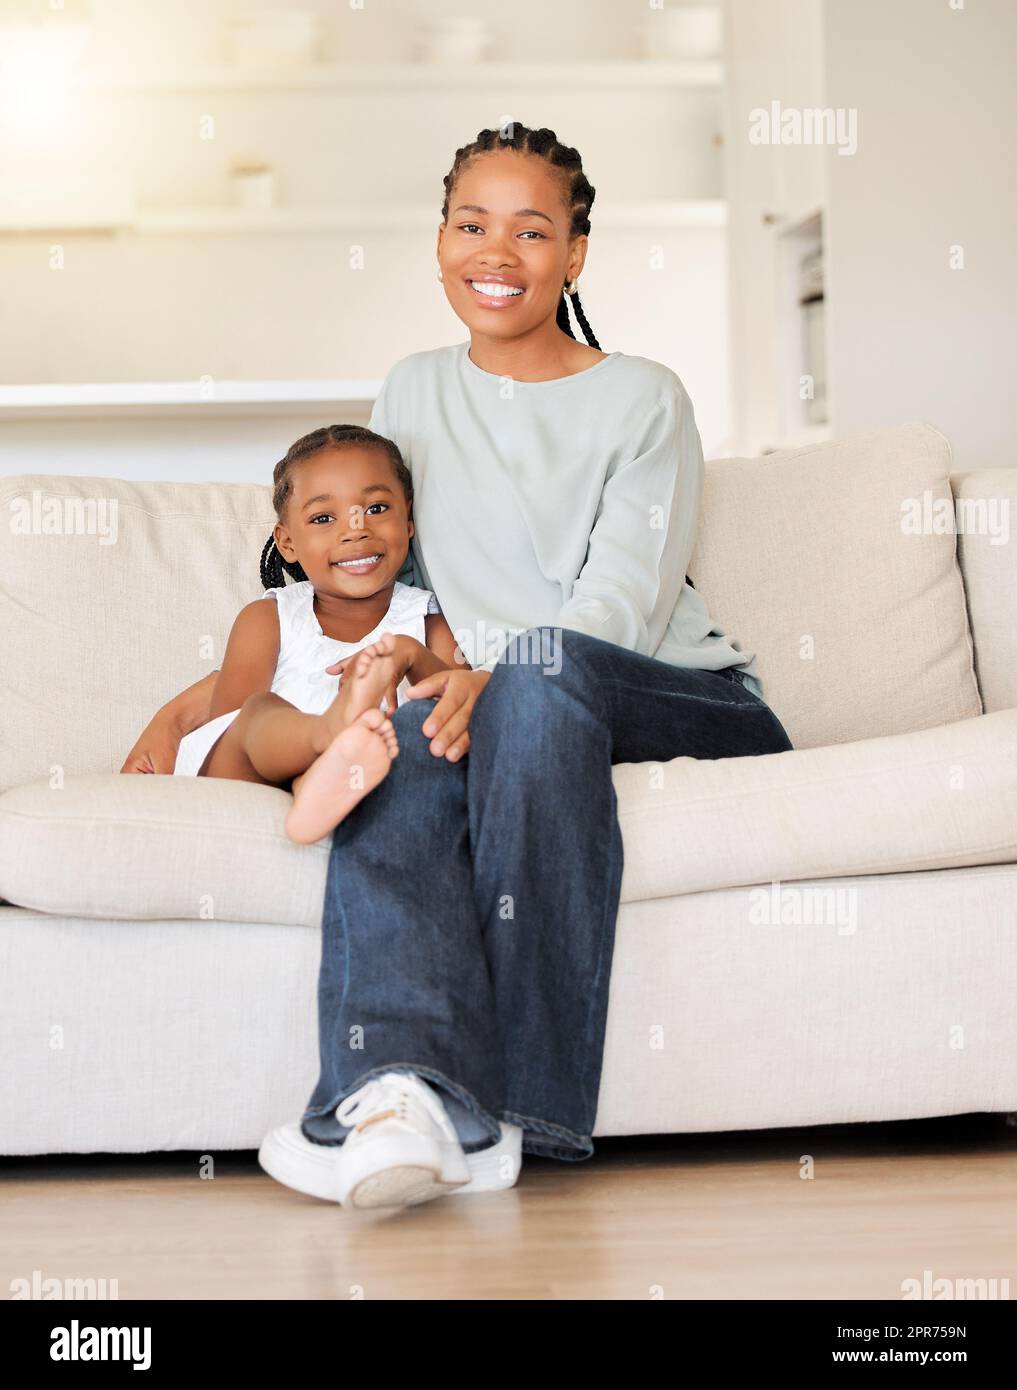 Glückliche und zufriedene junge afroamerikanische Mutter, die sich zu Hause auf der Couch in der Lounge entspannt und eine Beziehung zu ihrer kleinen Tochter herstellt. Ein kleines Mädchen lächelt, während es die Zeit mit ihrer mutter genießt Stockfoto